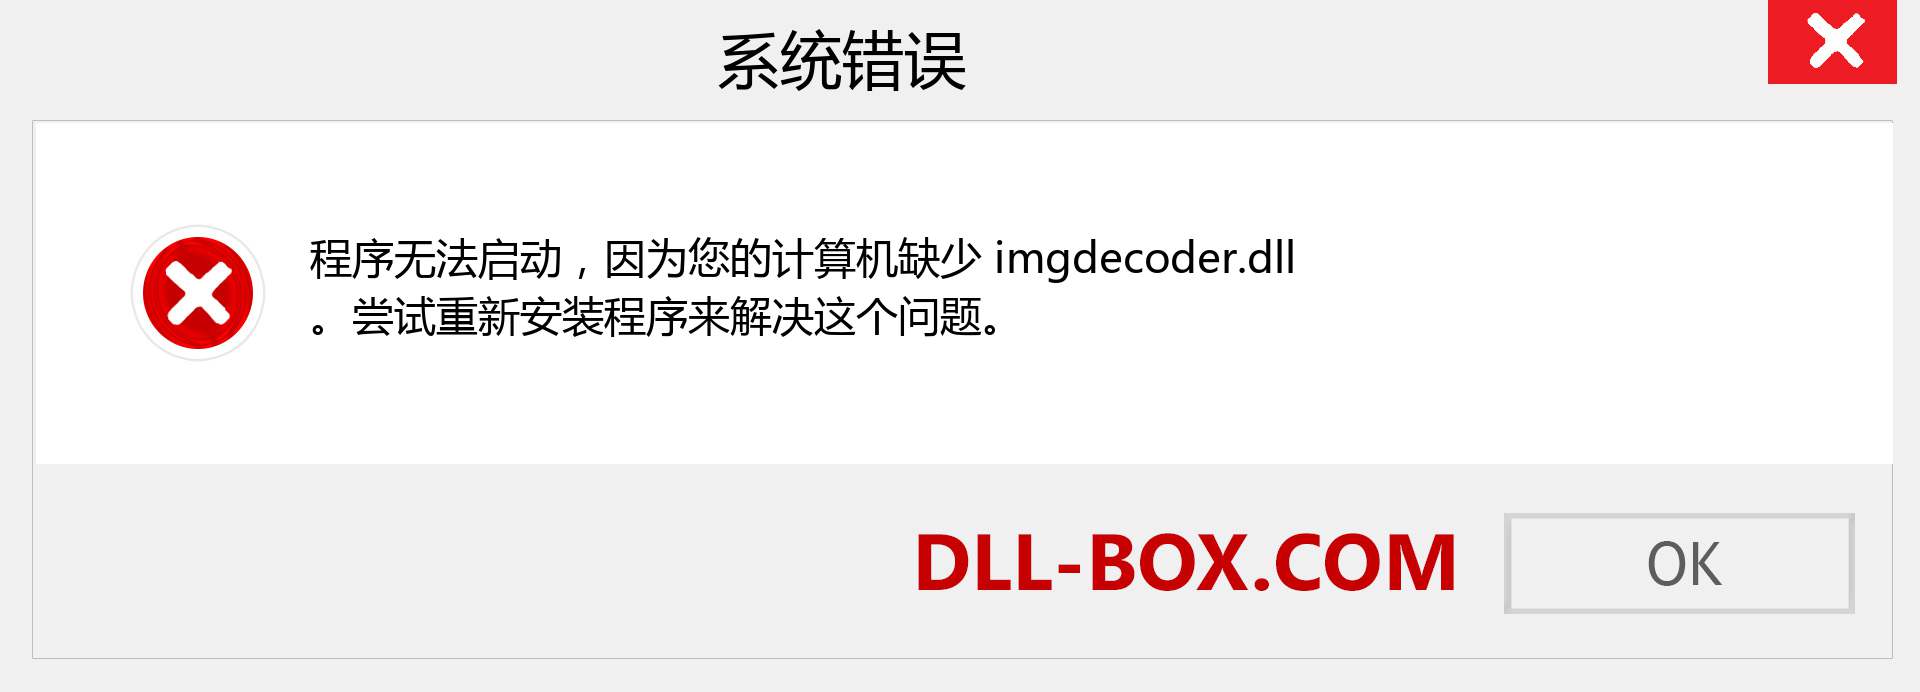 imgdecoder.dll 文件丢失？。 适用于 Windows 7、8、10 的下载 - 修复 Windows、照片、图像上的 imgdecoder dll 丢失错误